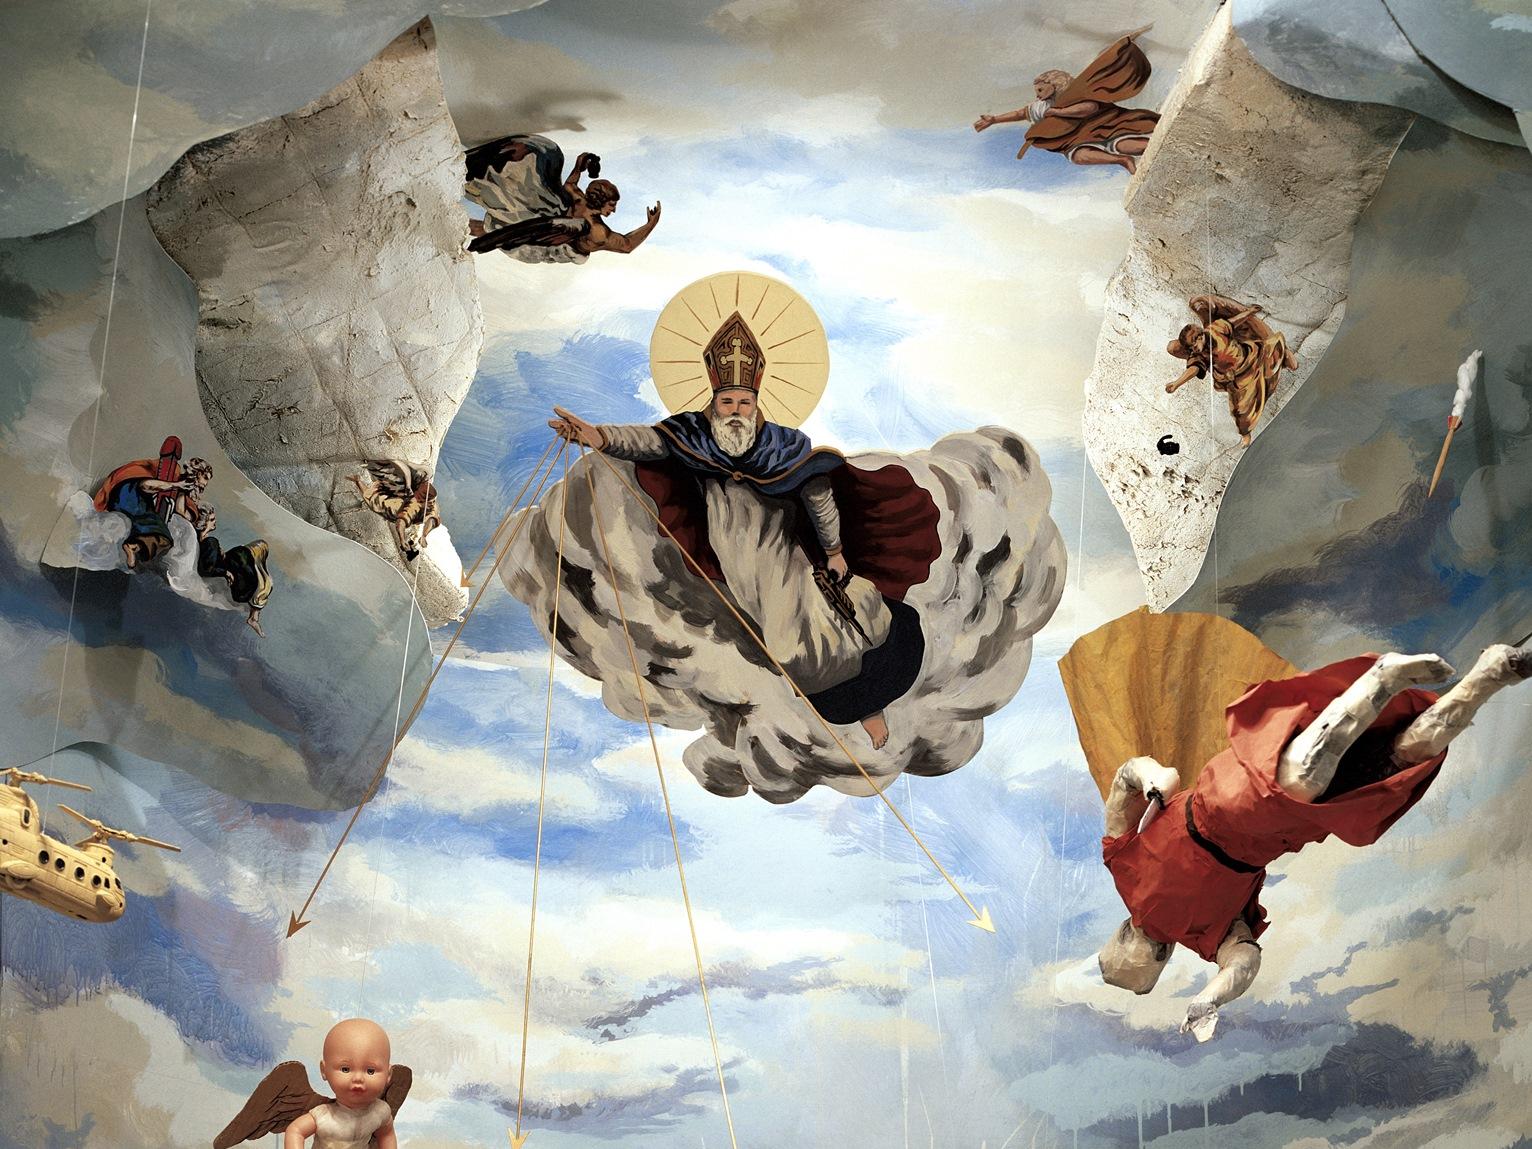 Obra que representa una escena celestial incluyendo figuras y objetos modernos